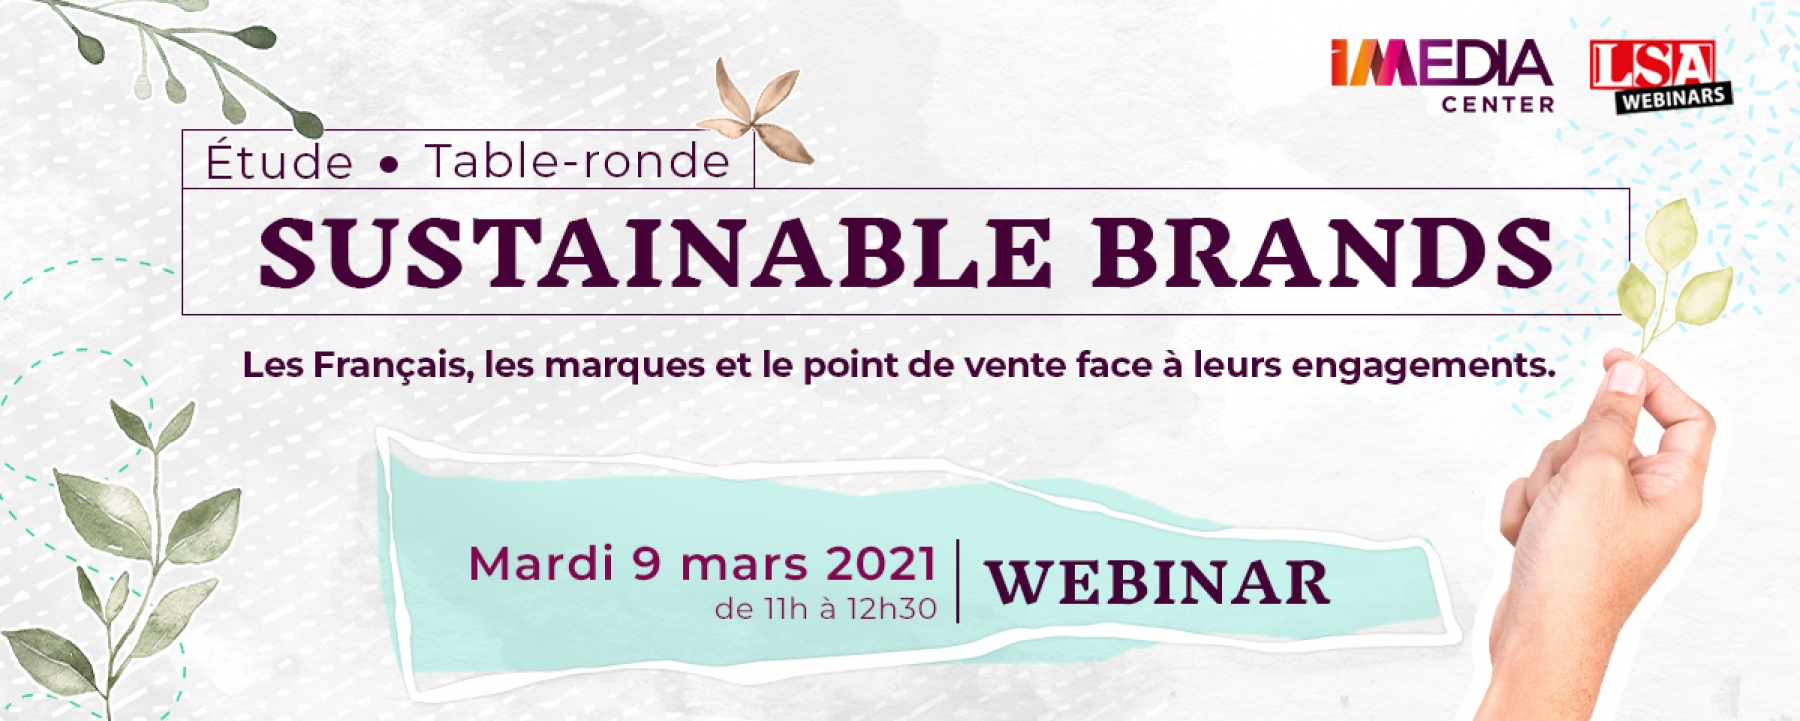 Sustainable Brands : les Français, les marques et le point de vente face à leurs engagements, un webinar organisé par  Imediacenter le mardi 9 mars